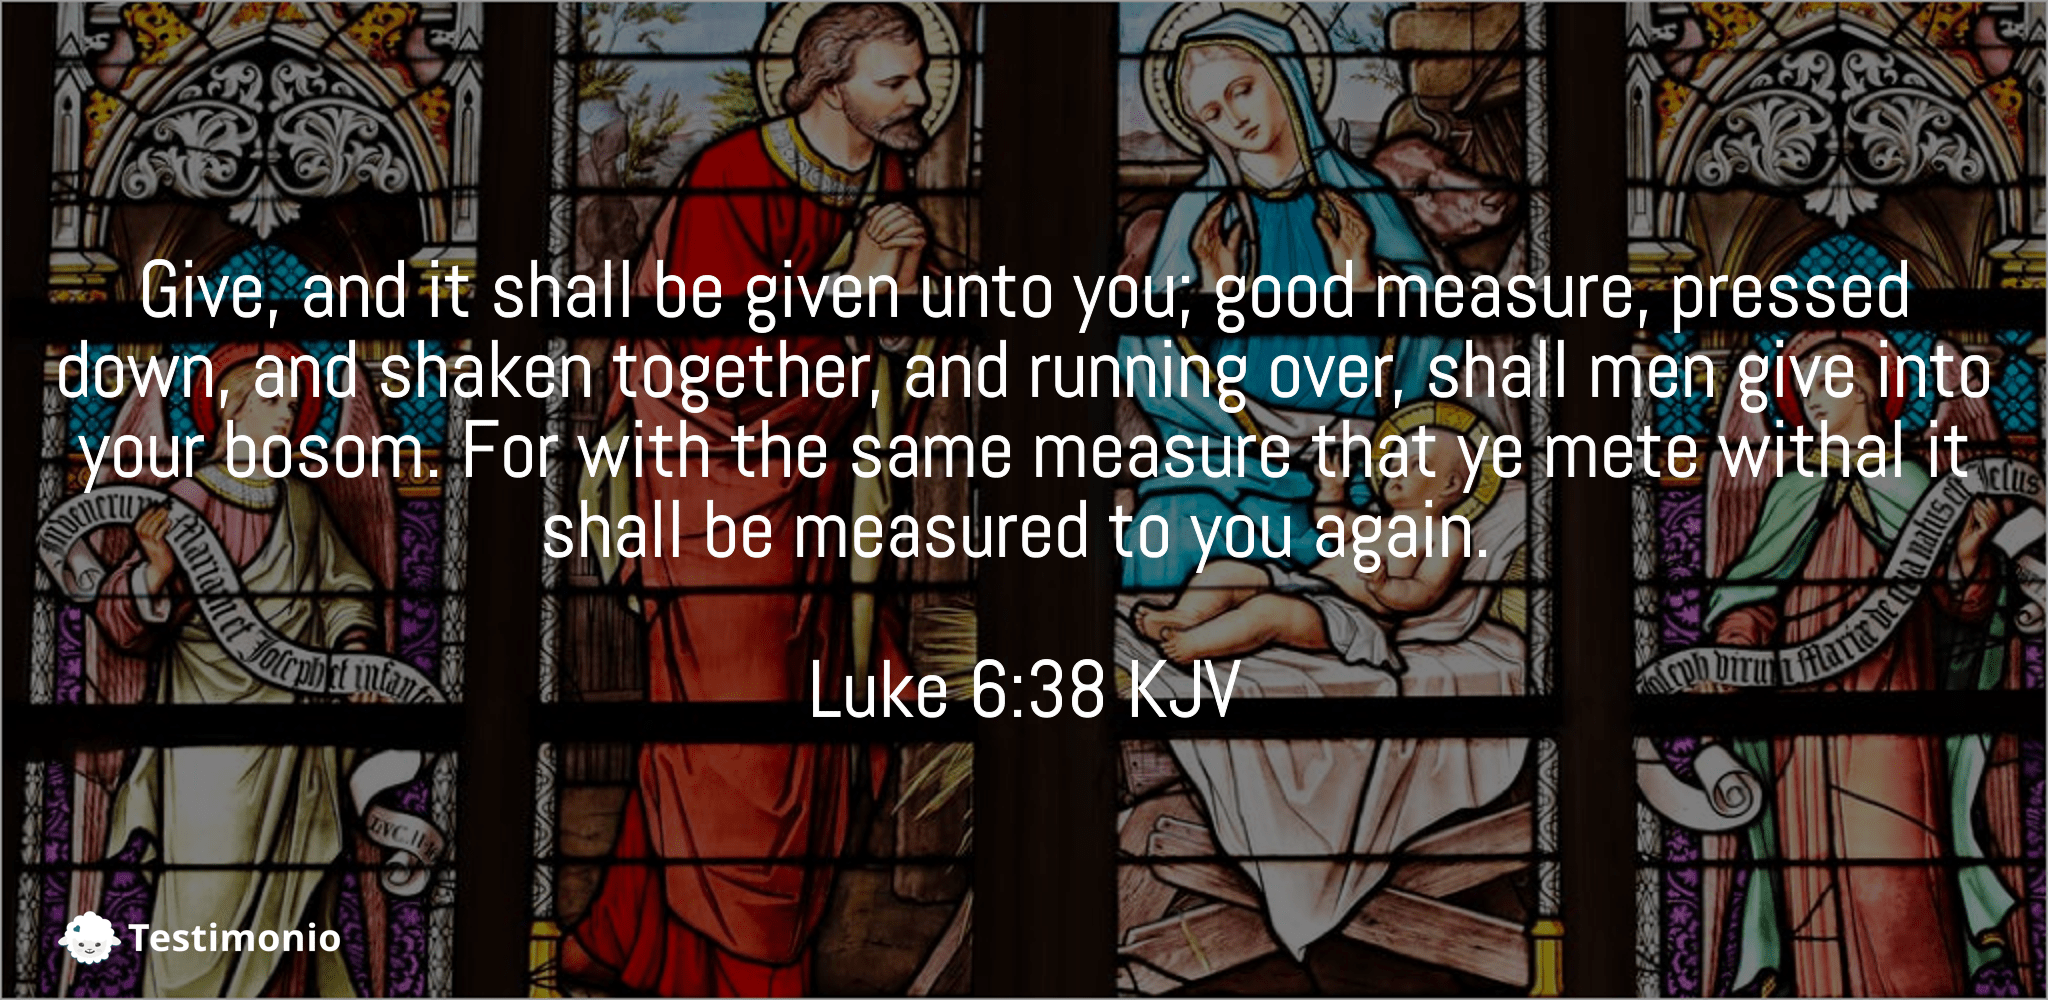 Luke 6:38